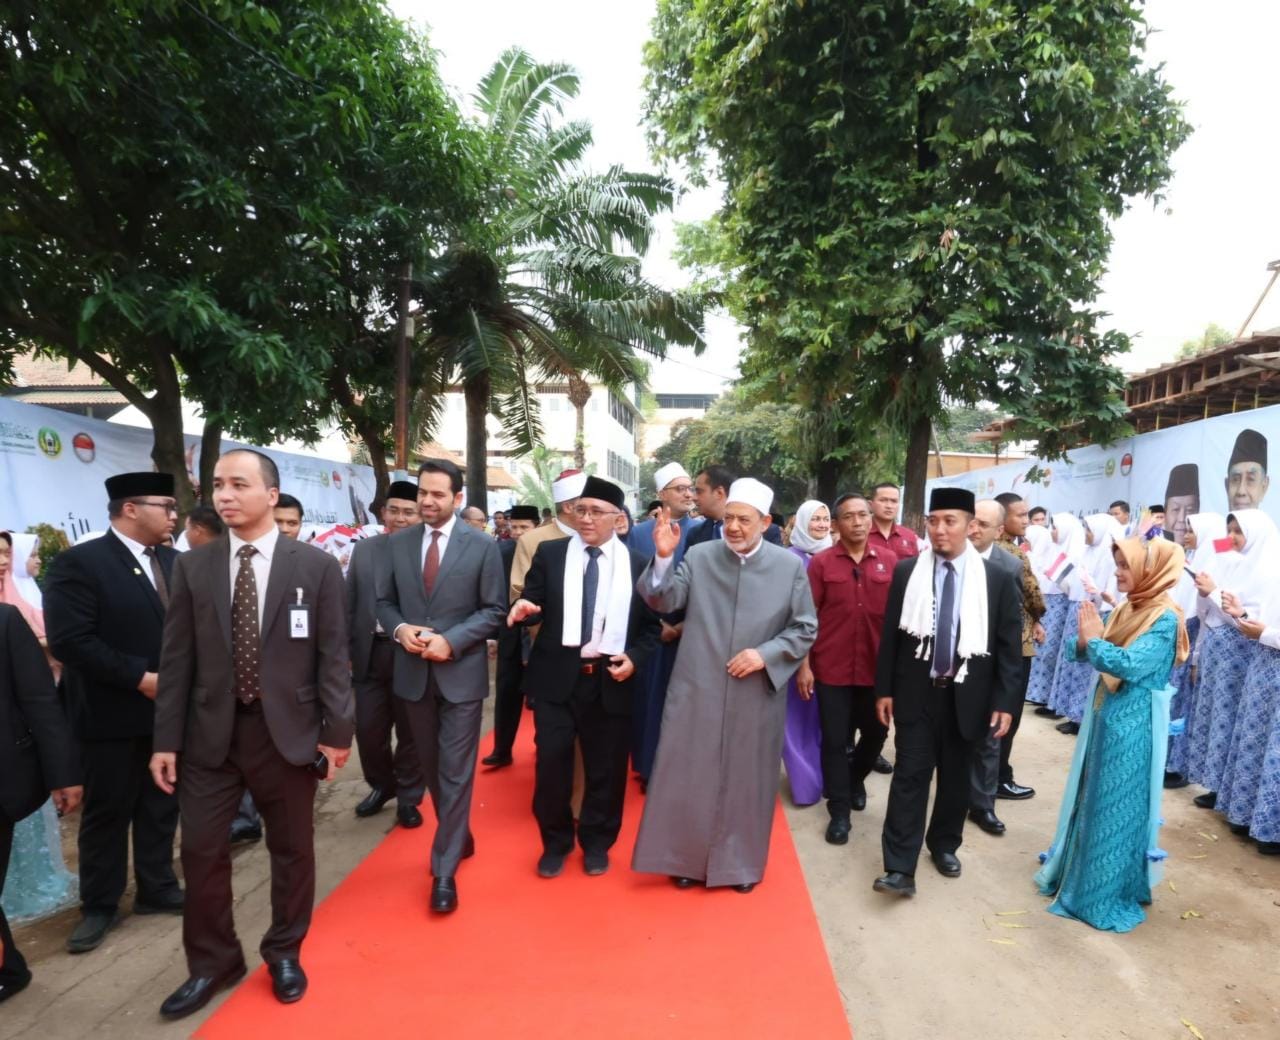 استقبال حاشد لشيخ الأزهر خلال زيارته لمعاهد دار النجاح الإسلامية بإندونيسيا.jpg